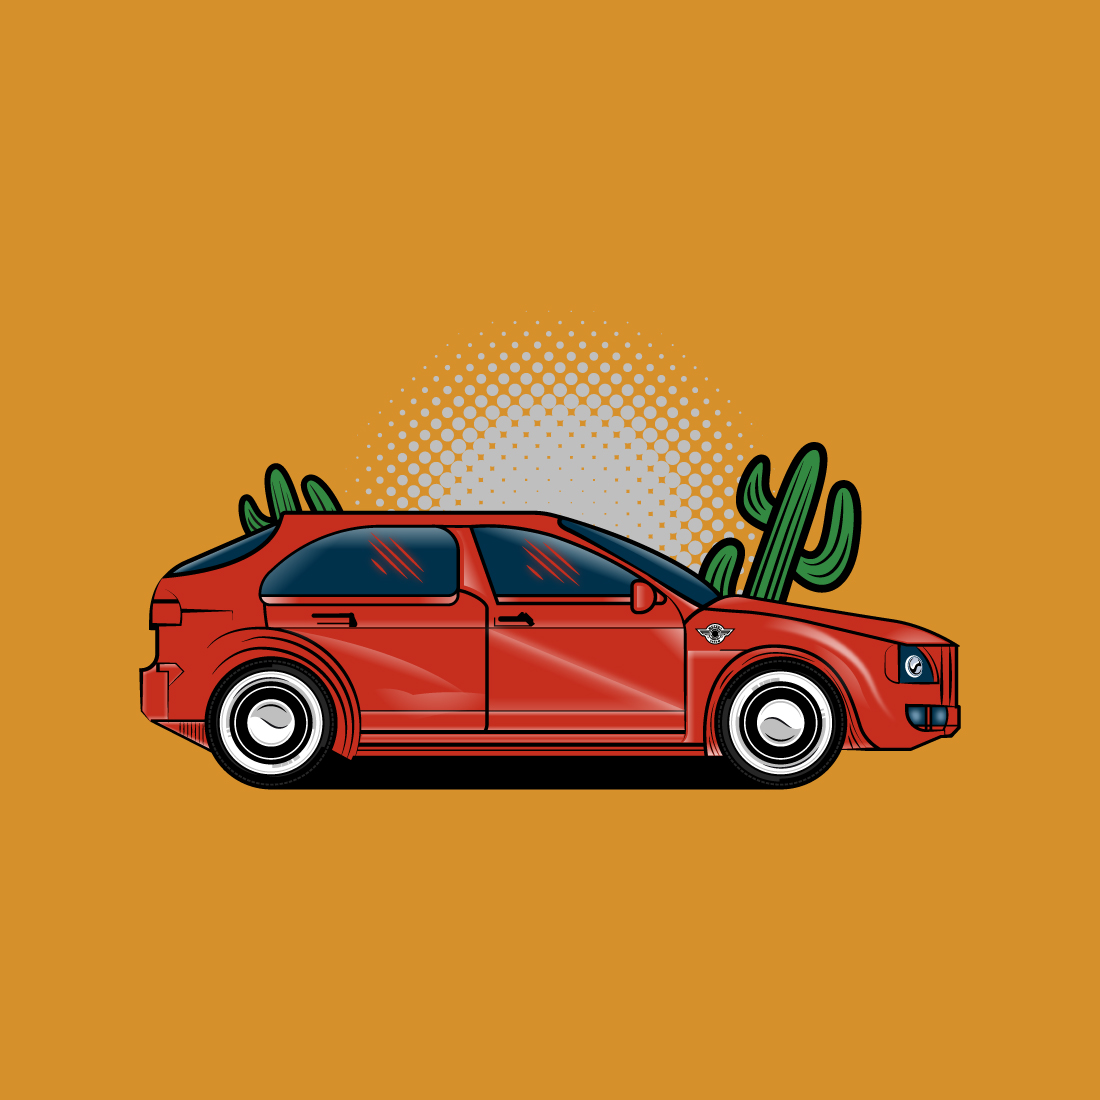 Car Digital Illustration Design cover image.